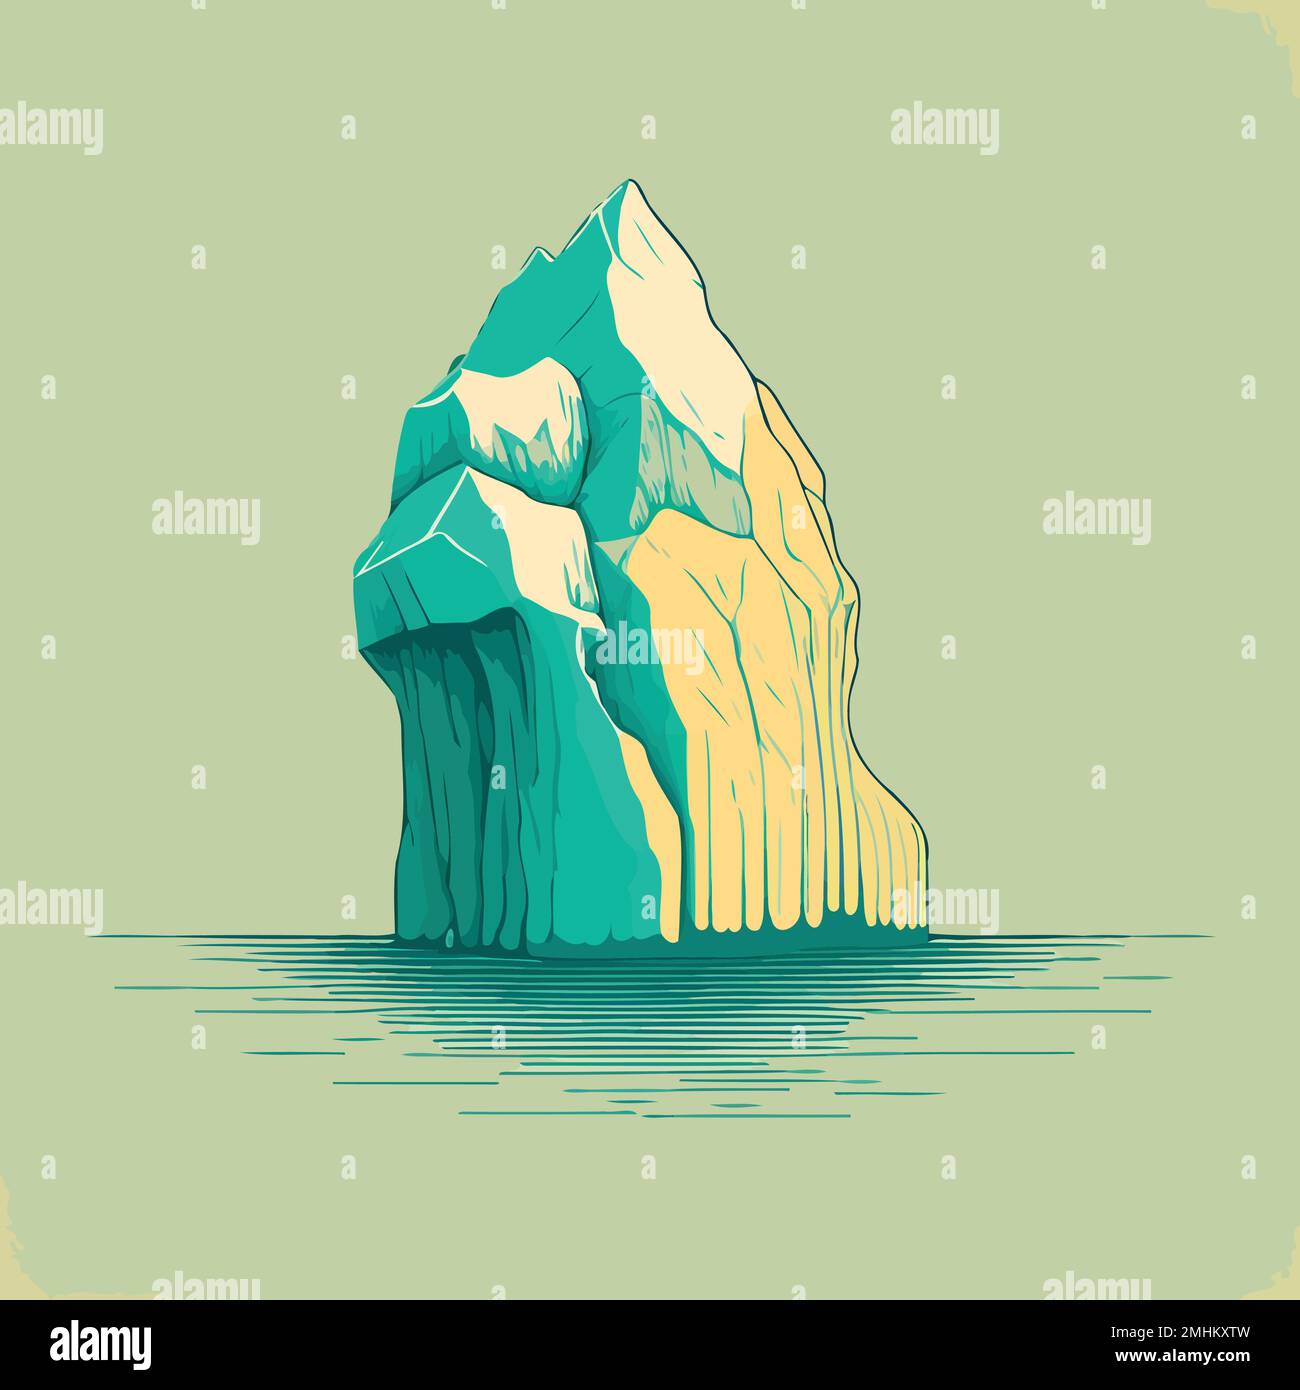 Illustrazione di un gigantesco iceberg di ghiaccio che galleggia sull'oceano Illustrazione Vettoriale